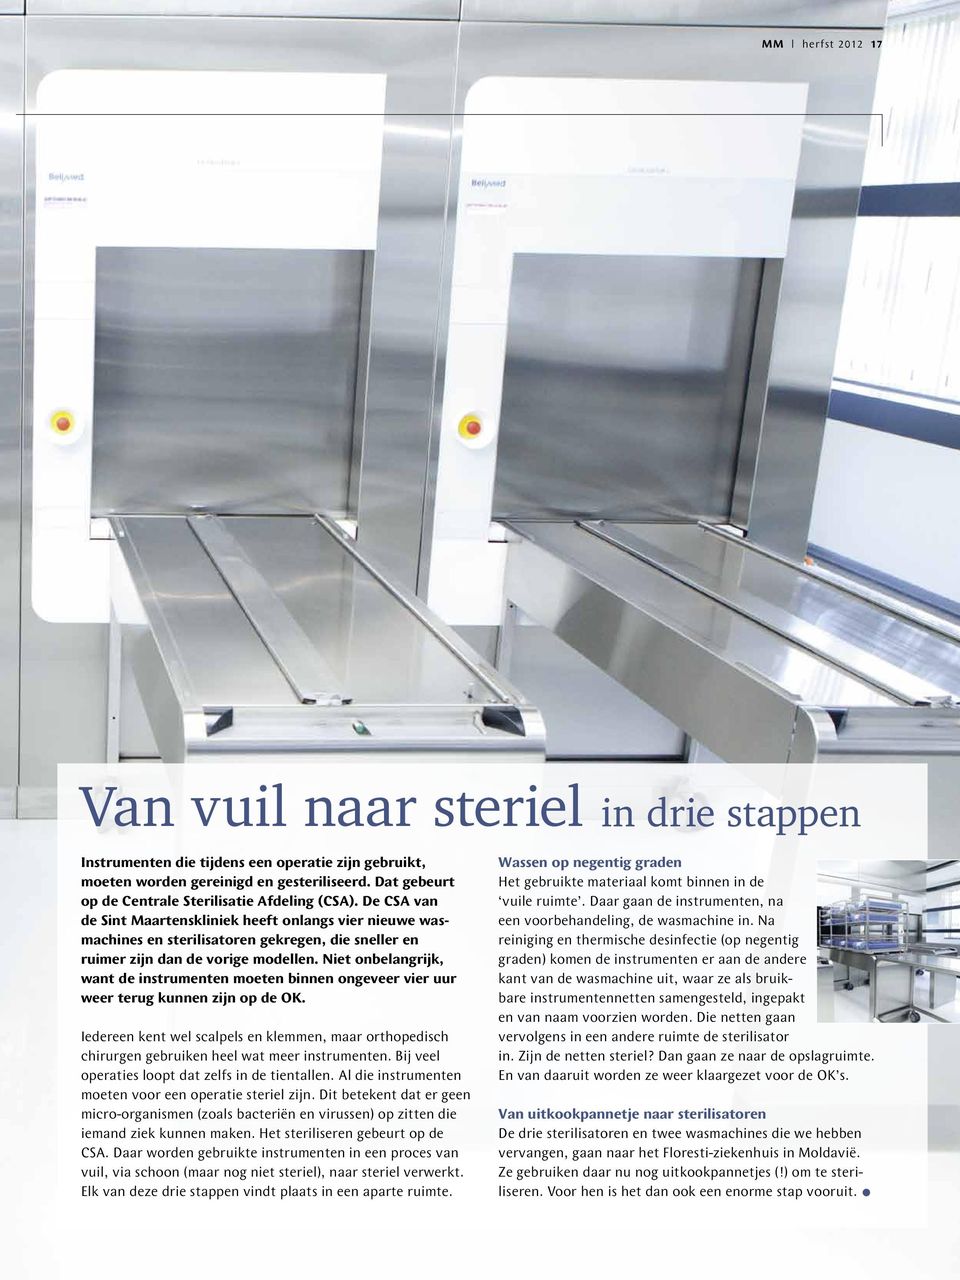 De CSA van de Sint Maartenskliniek heeft onlangs vier nieuwe wasmachines en sterilisatoren gekregen, die sneller en ruimer zijn dan de vorige modellen.